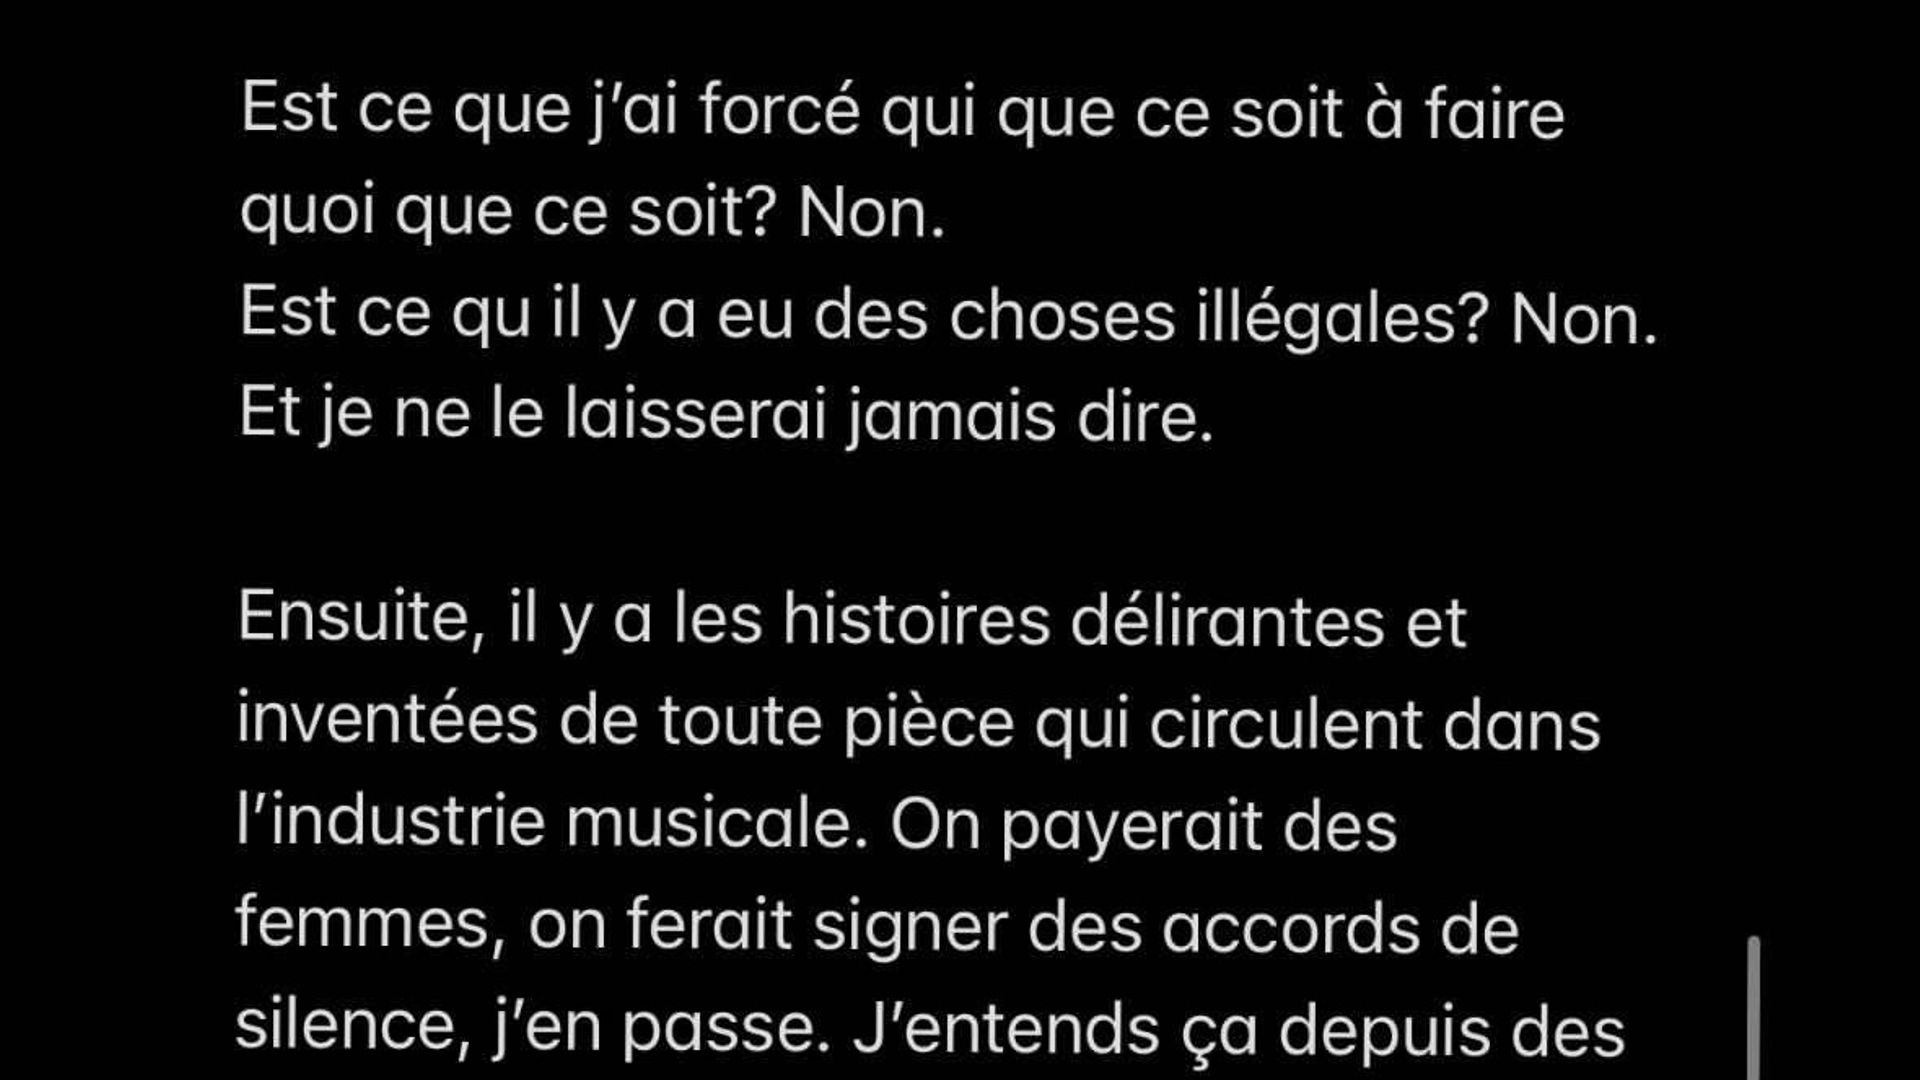 Paris : le rappeur Lomepal accusé de viol, une enquête préliminaire ouverte